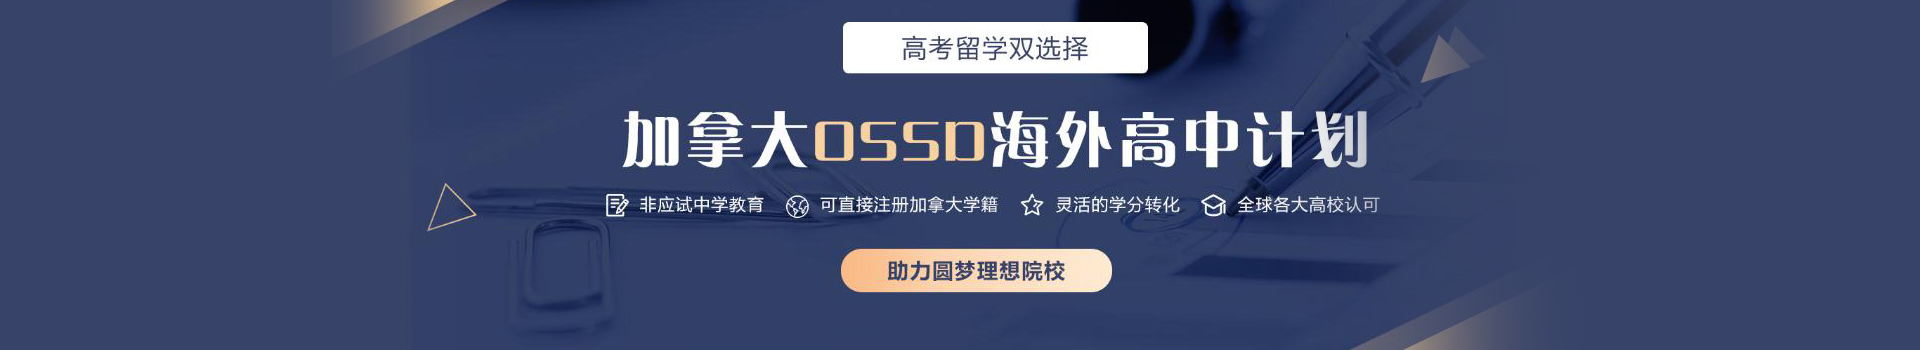 杭州新航道OSSD课程